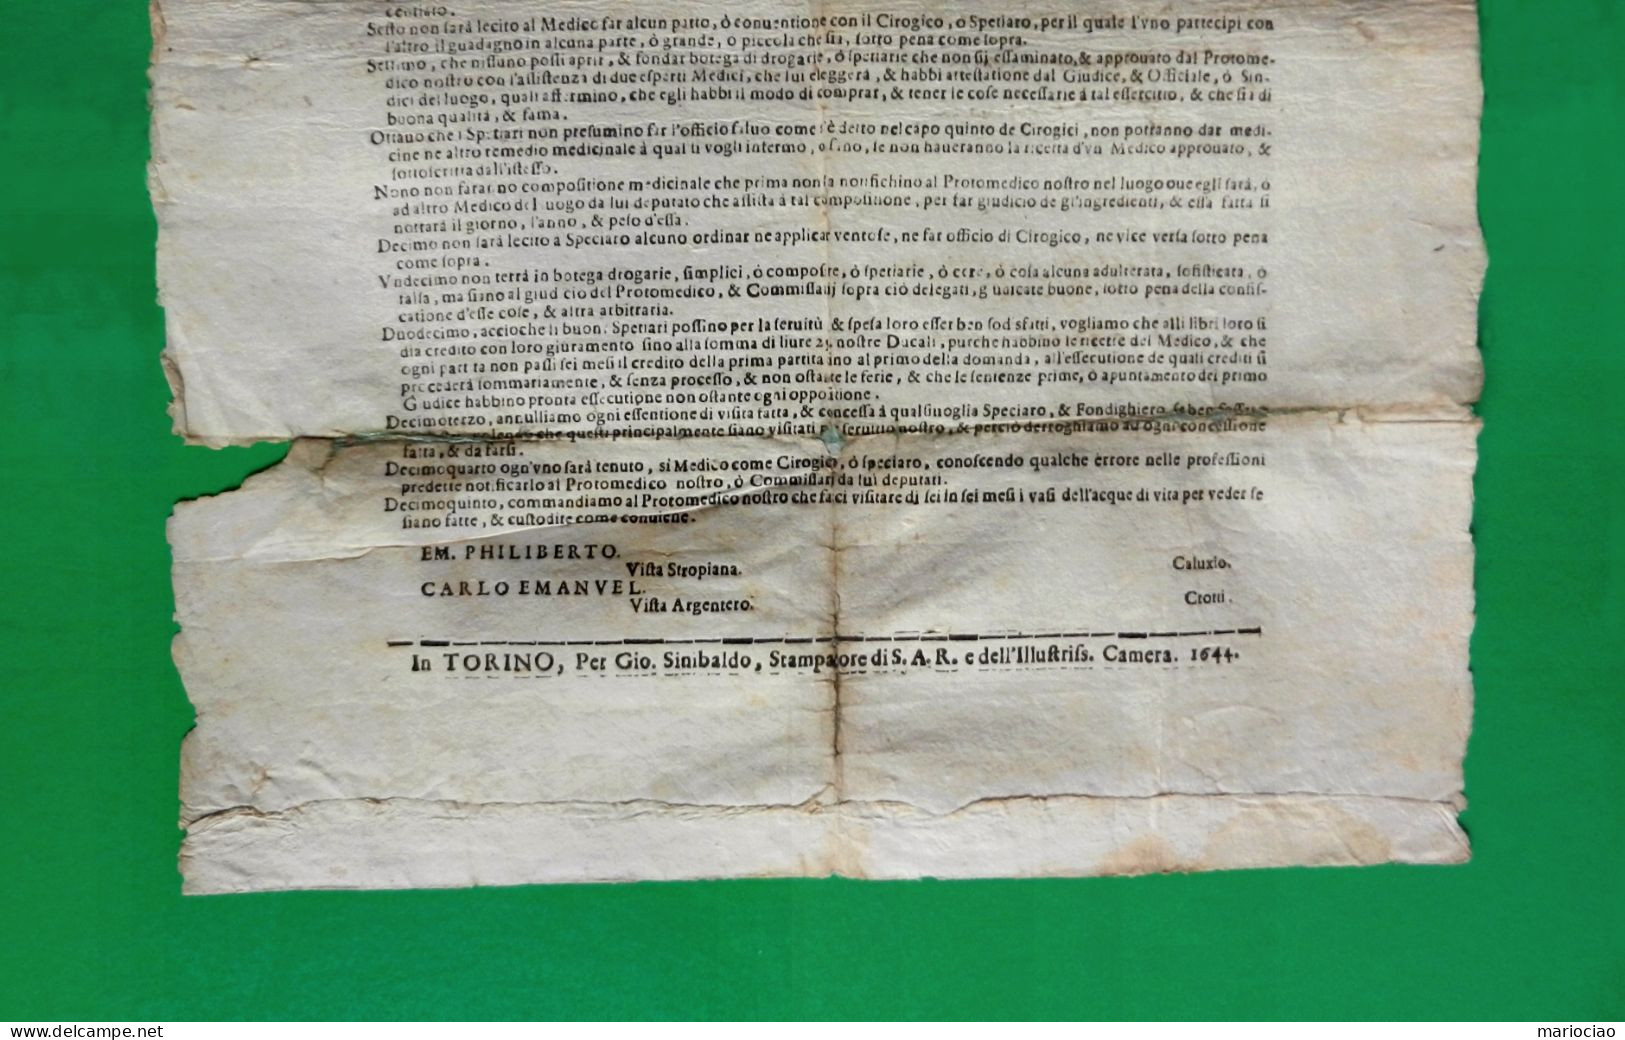 D-IT DUCATO DI SAVOIA Torino 1644 Emanuel Filiberto ORDINI MEDICINALI - Historische Dokumente